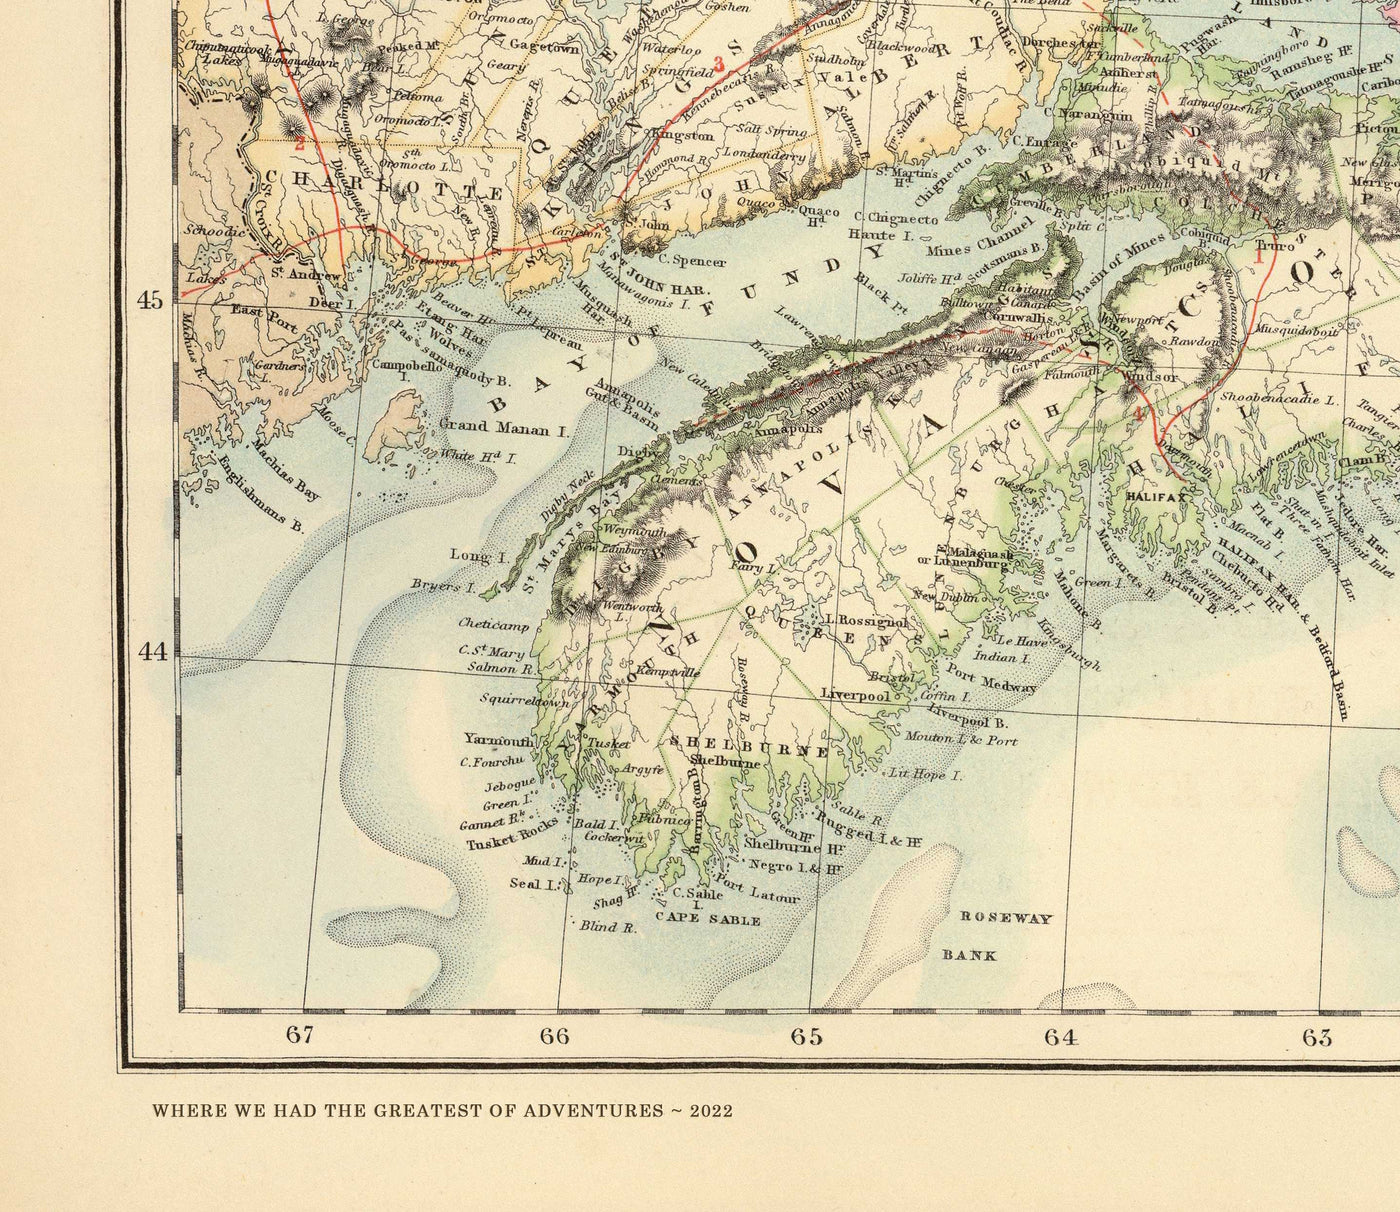 Antiguo mapa de Hong Kong, 1924 por Sung Chun Wa - Central, Kowloon, Causeway, Victoria Harbour, Islas, Montañas, Lamma